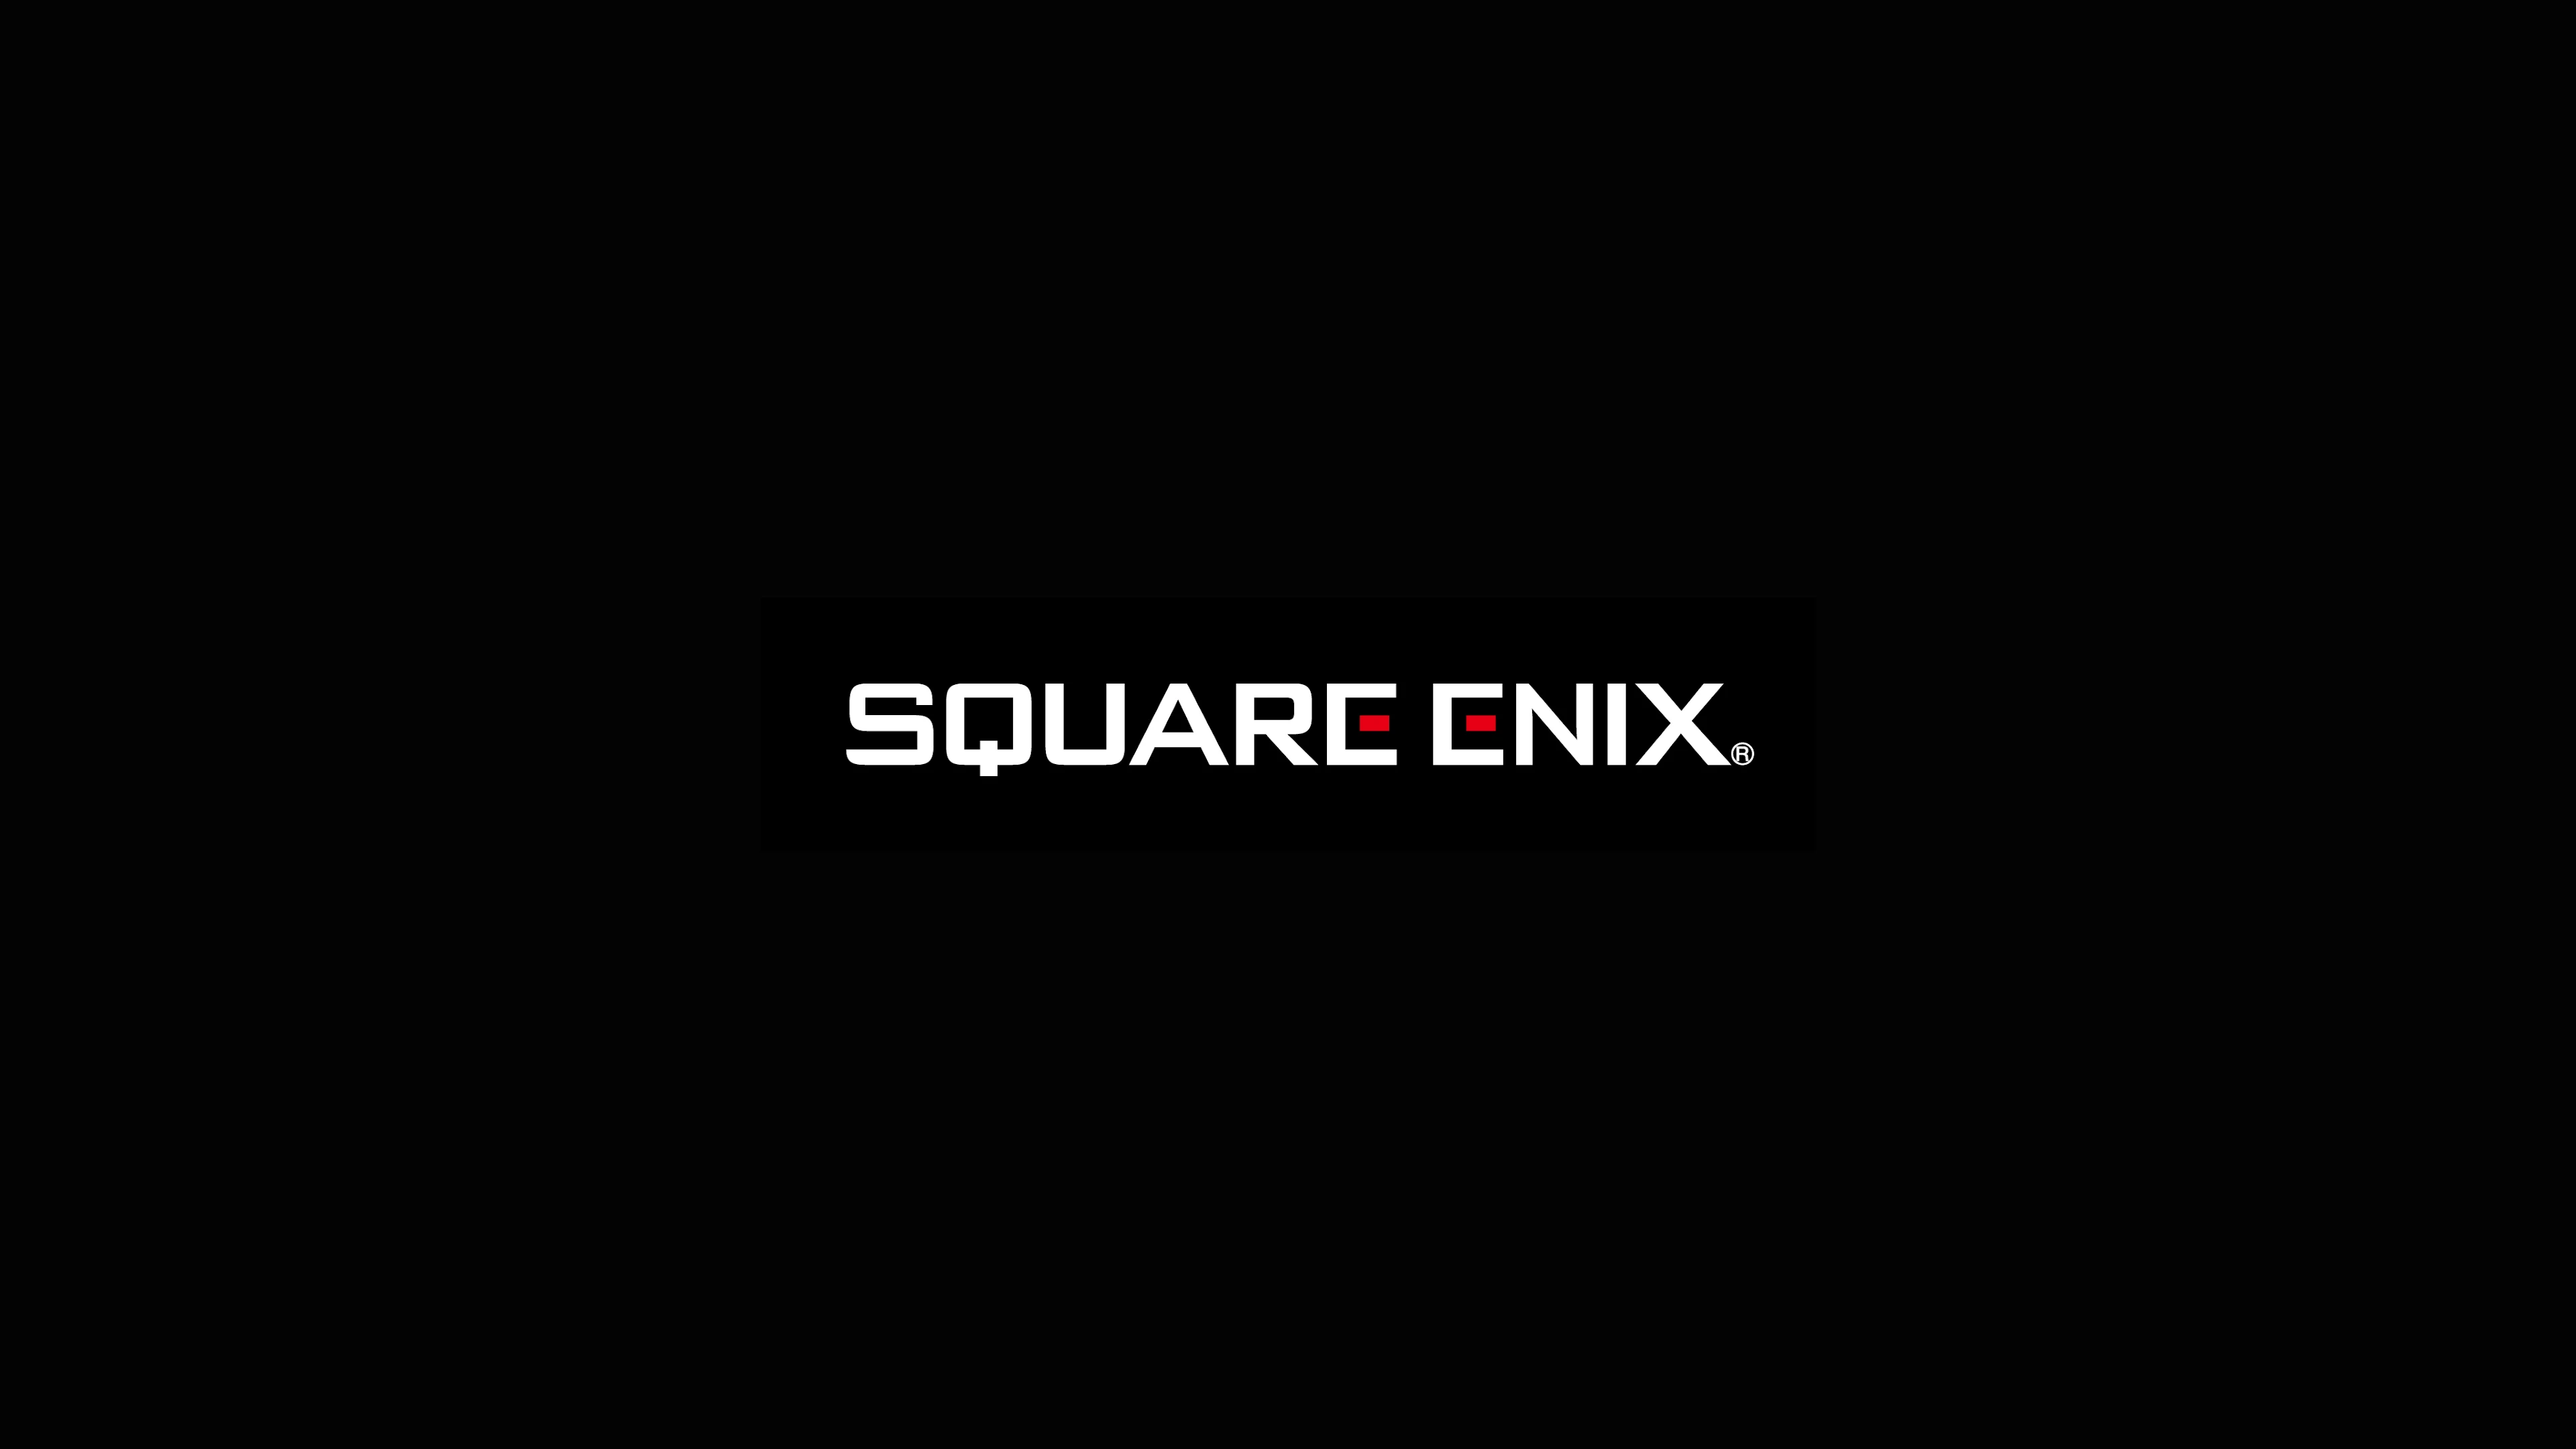 SQUARE ENIX  The Official SQUARE ENIX Website